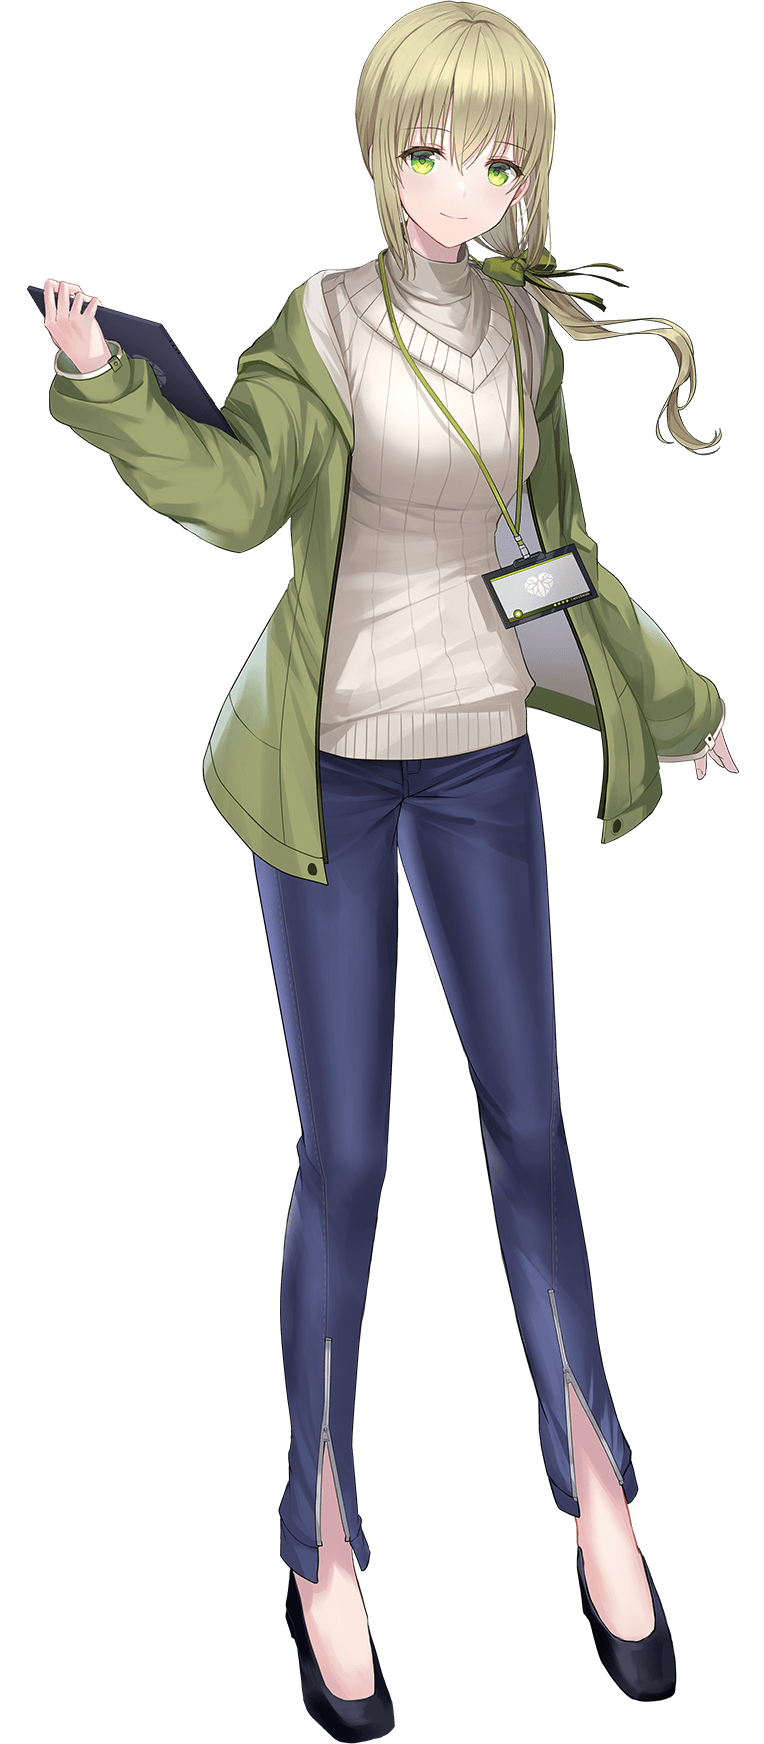 「葵茶々」は霧島レイ、富士サクラとともに羽衣6のメンバー。ユピテル静岡研究所に勤務する、ユピテルオリジナルアニメキャラクター。